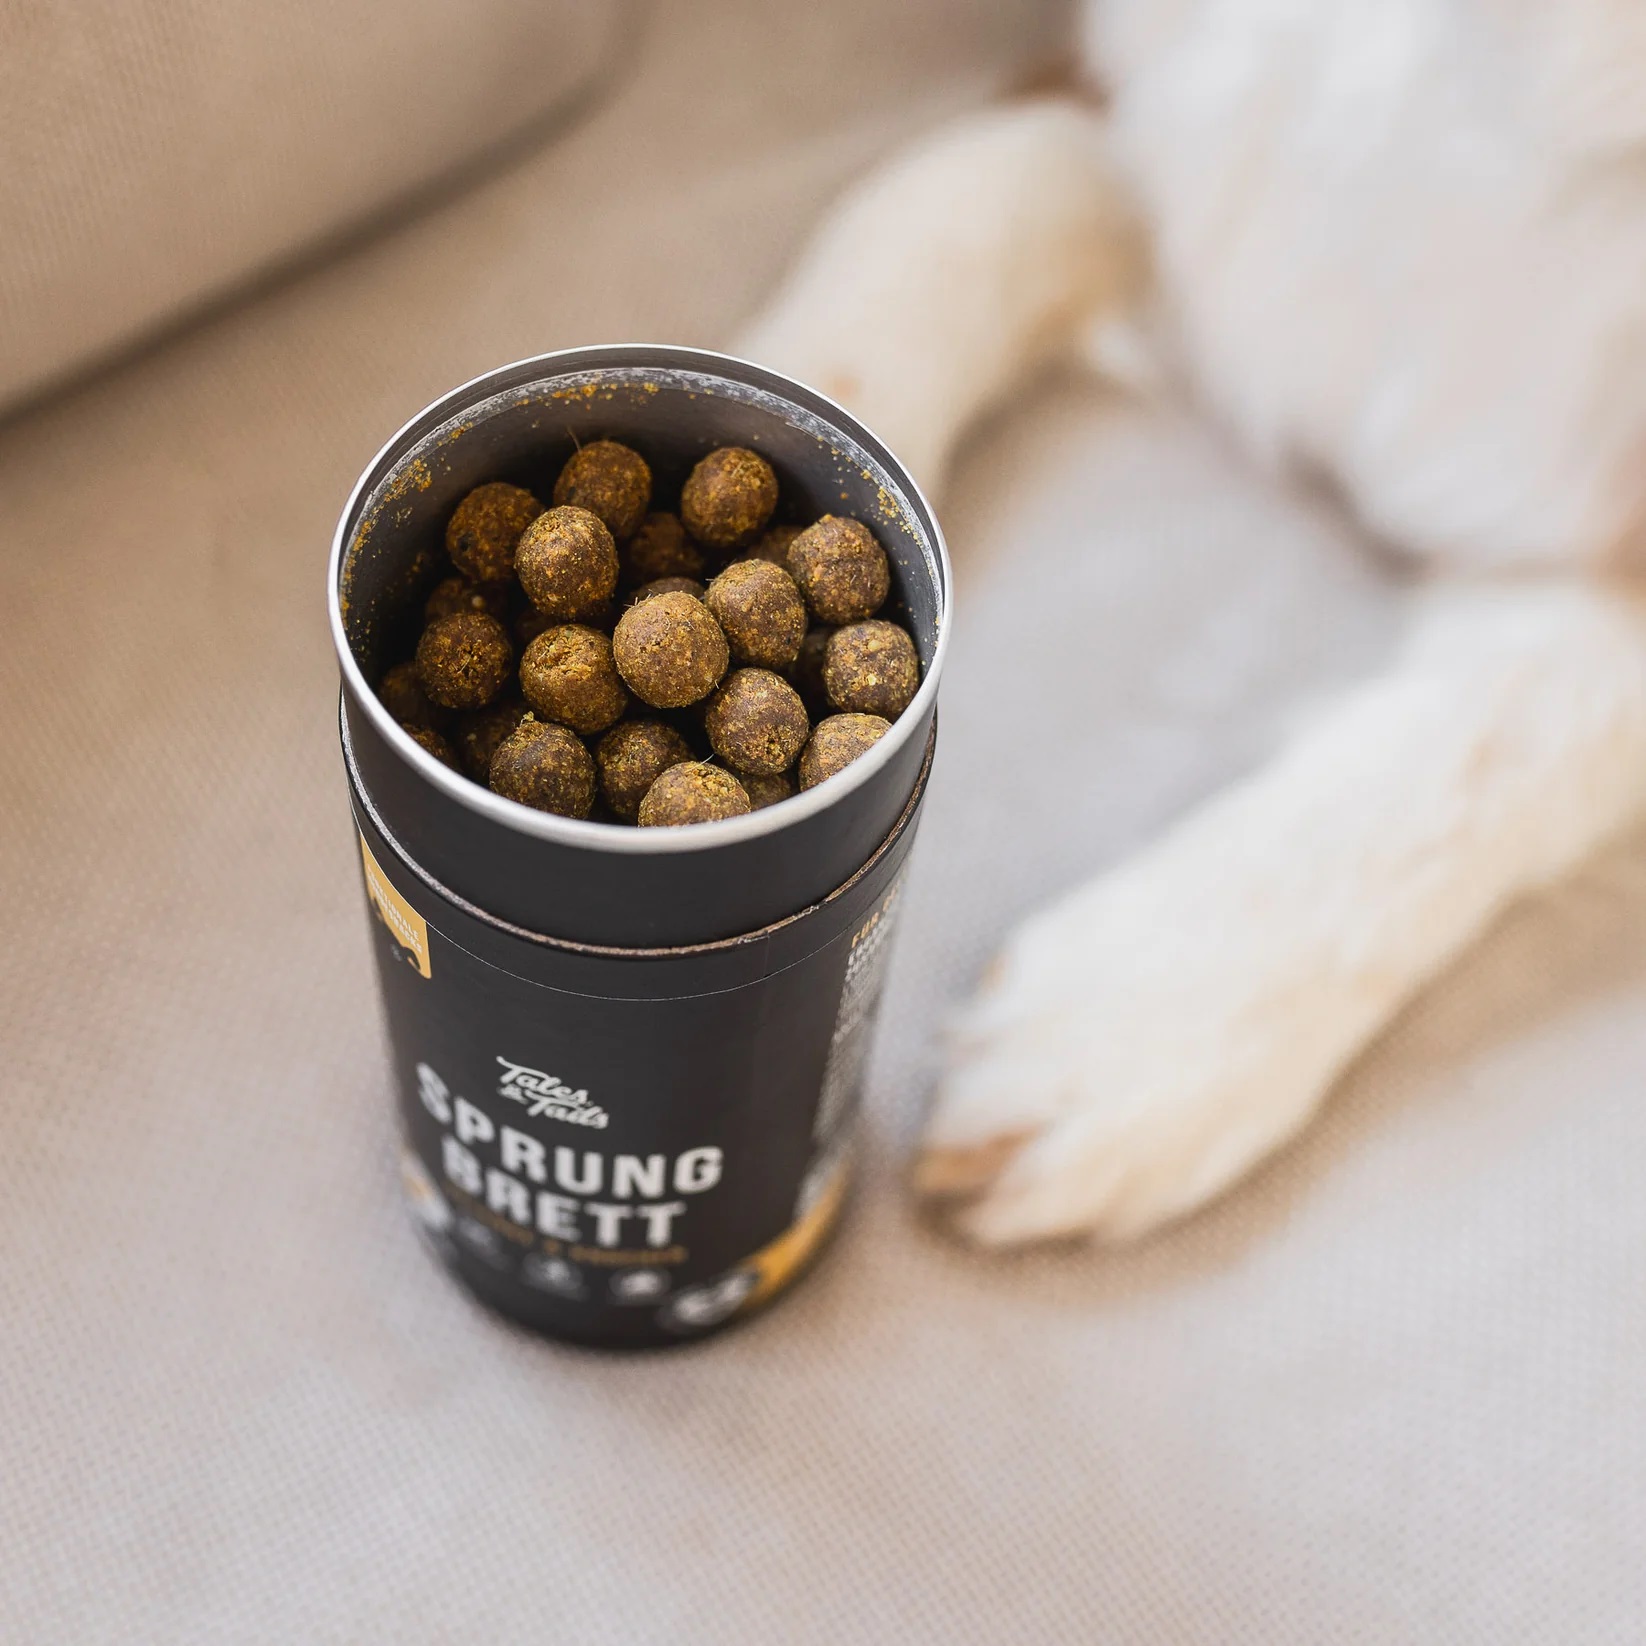 Sprungbrett Gelenk- und Knochen-Snack für Hunde, 325 g = 170 Snacks